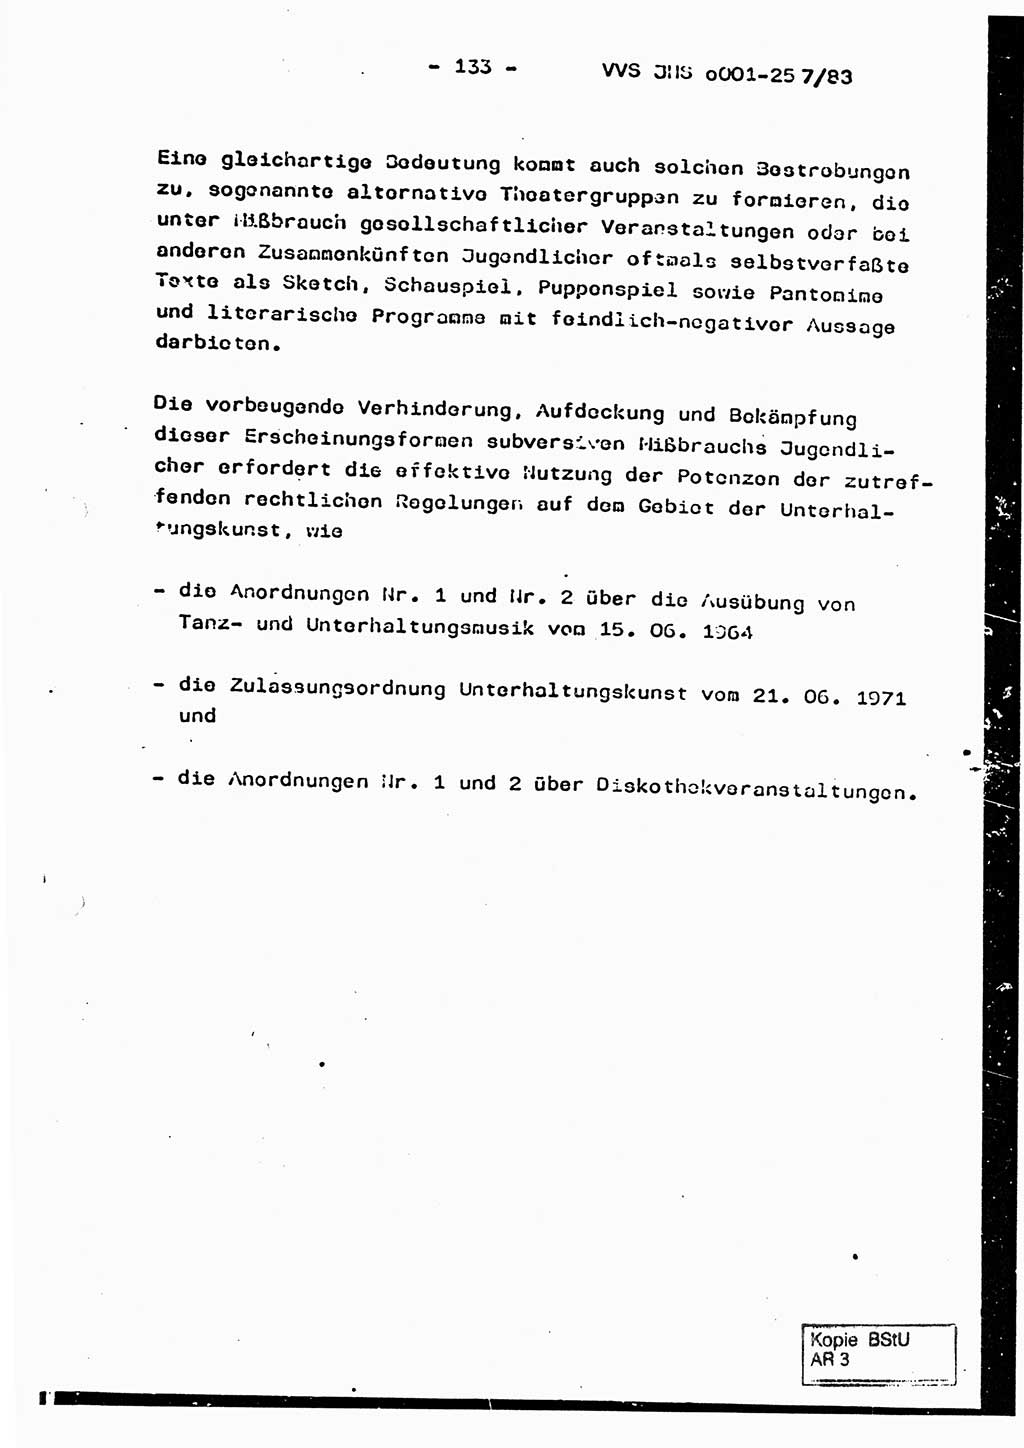 Dissertation, Oberst Helmut Lubas (BV Mdg.), Oberstleutnant Manfred Eschberger (HA IX), Oberleutnant Hans-Jürgen Ludwig (JHS), Ministerium für Staatssicherheit (MfS) [Deutsche Demokratische Republik (DDR)], Juristische Hochschule (JHS), Vertrauliche Verschlußsache (VVS) o001-257/83, Potsdam 1983, Seite 133 (Diss. MfS DDR JHS VVS o001-257/83 1983, S. 133)